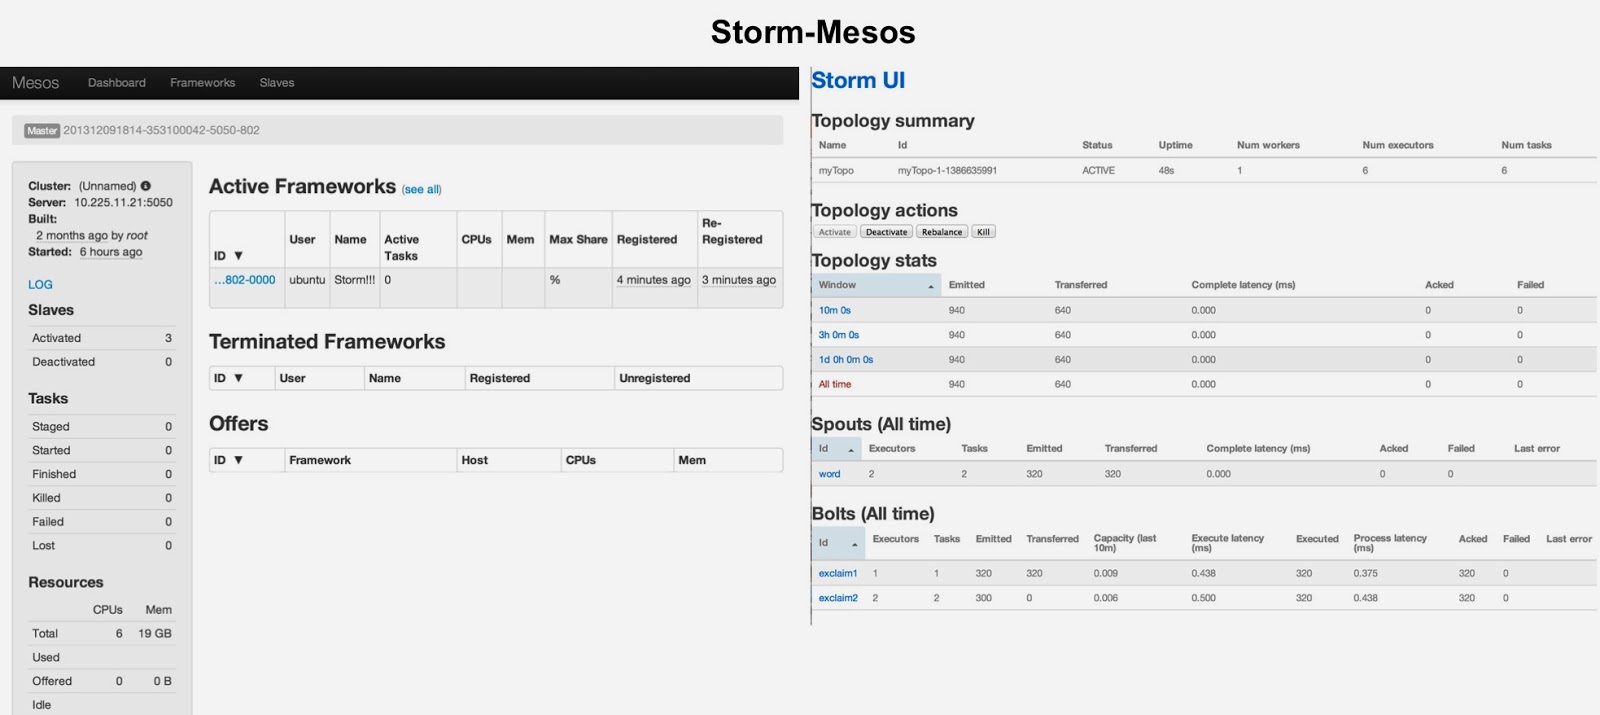 Mesosphere: Storm-Mesos